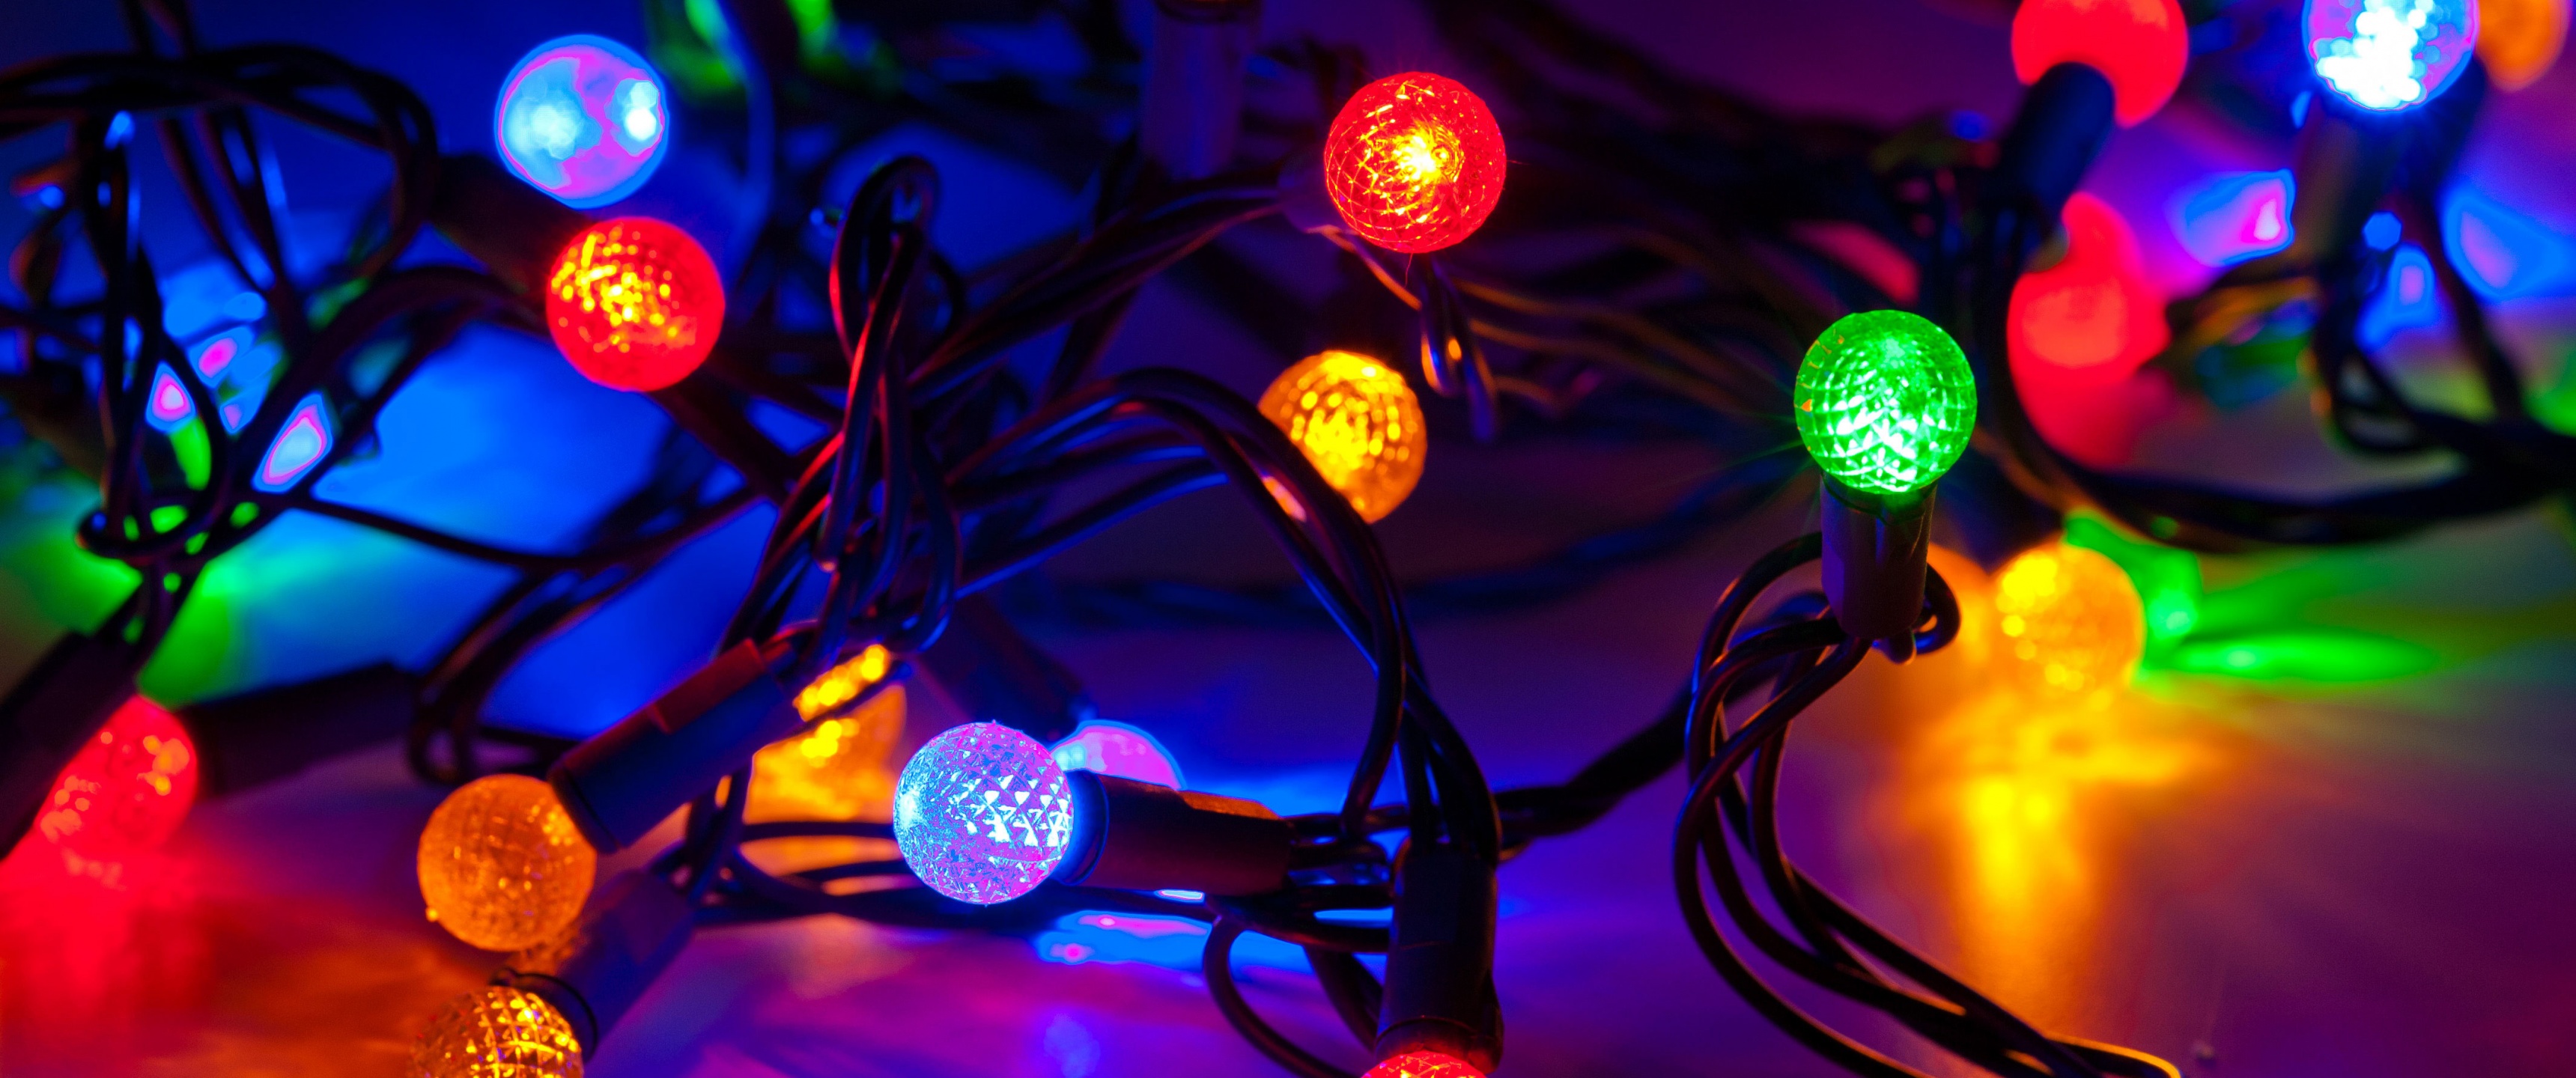 Hình nền đèn đêm rực rỡ đón Giáng sinh sẽ khiến người dùng say đắm với vẻ đẹp cuối năm. Nhiều chủ đề khác nhau và màu sắc sặc sỡ, tạo nên phong cách riêng cho mỗi thiết bị. Tải ngay để thay đổi không khí Giáng sinh ở mọi nơi.